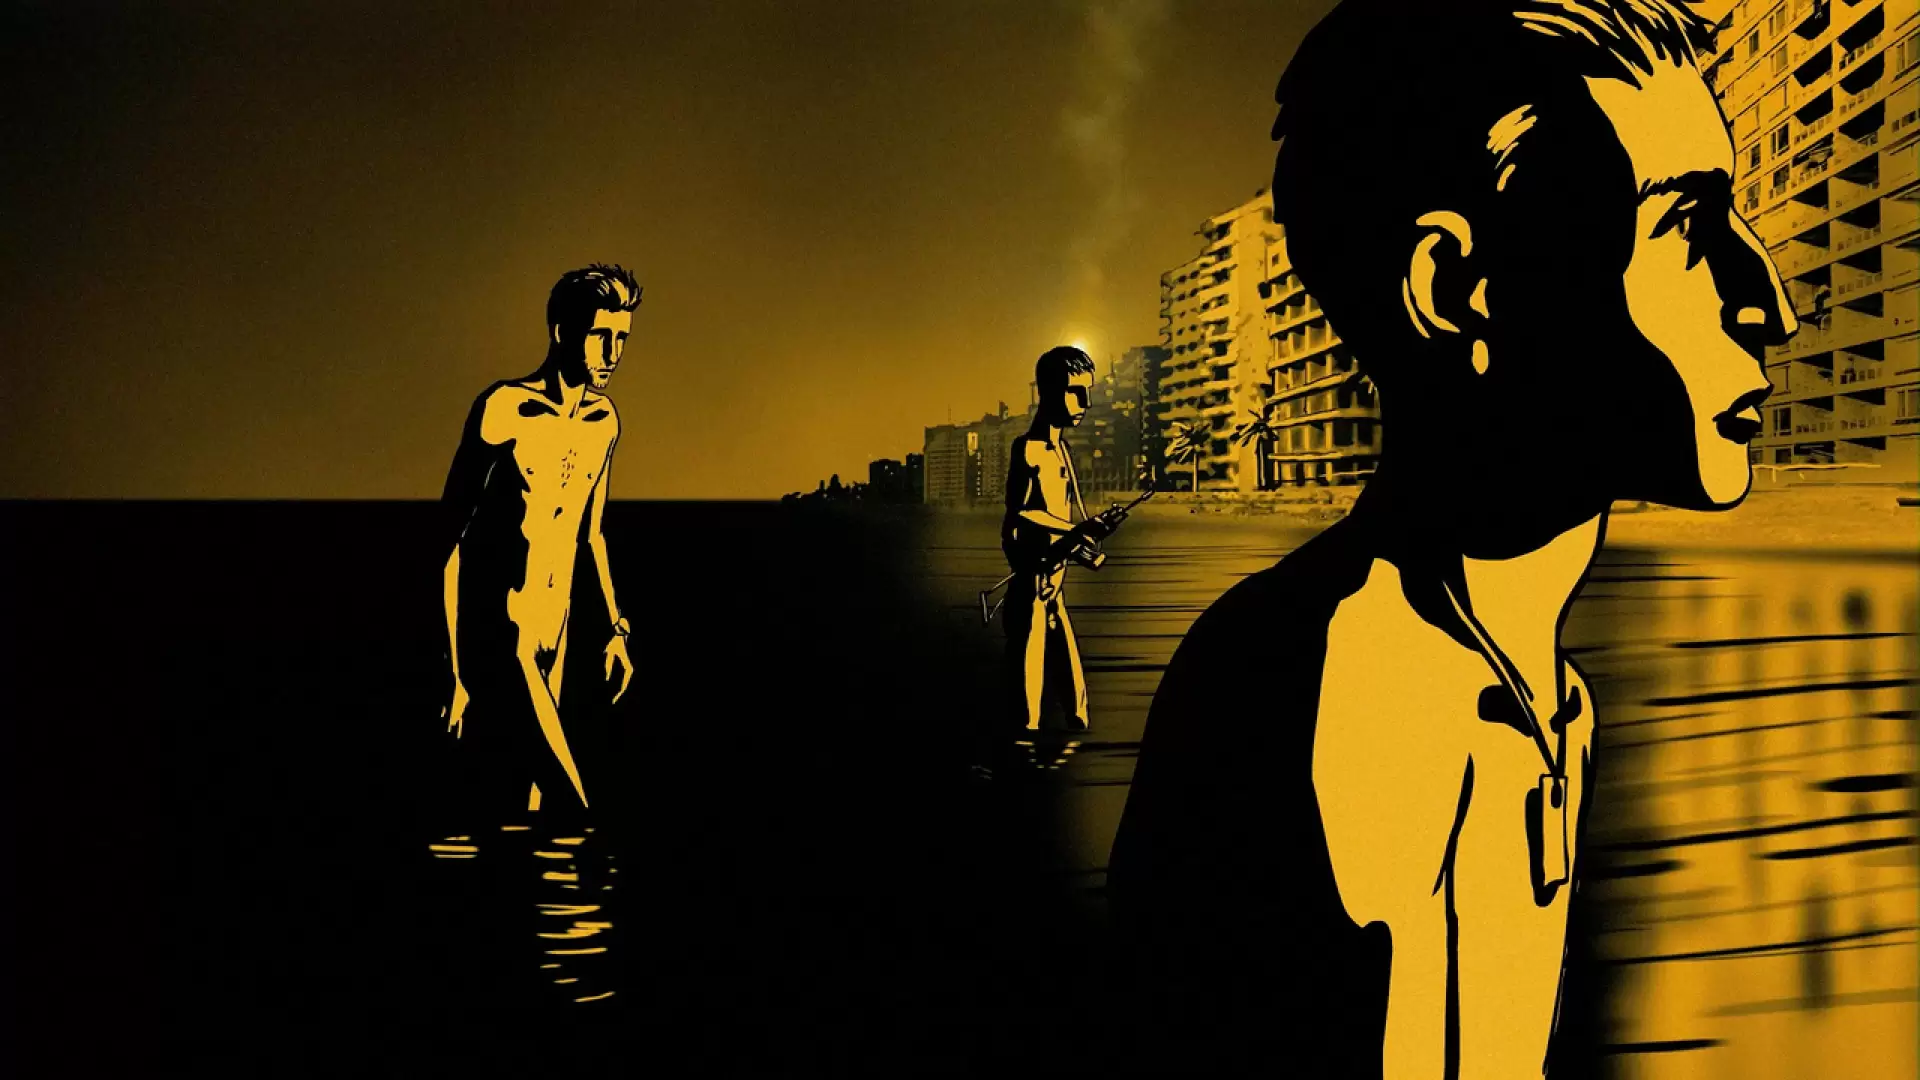 دانلود انیمیشن Waltz with Bashir 2008 (والس با بشیر) با زیرنویس فارسی و تماشای آنلاین